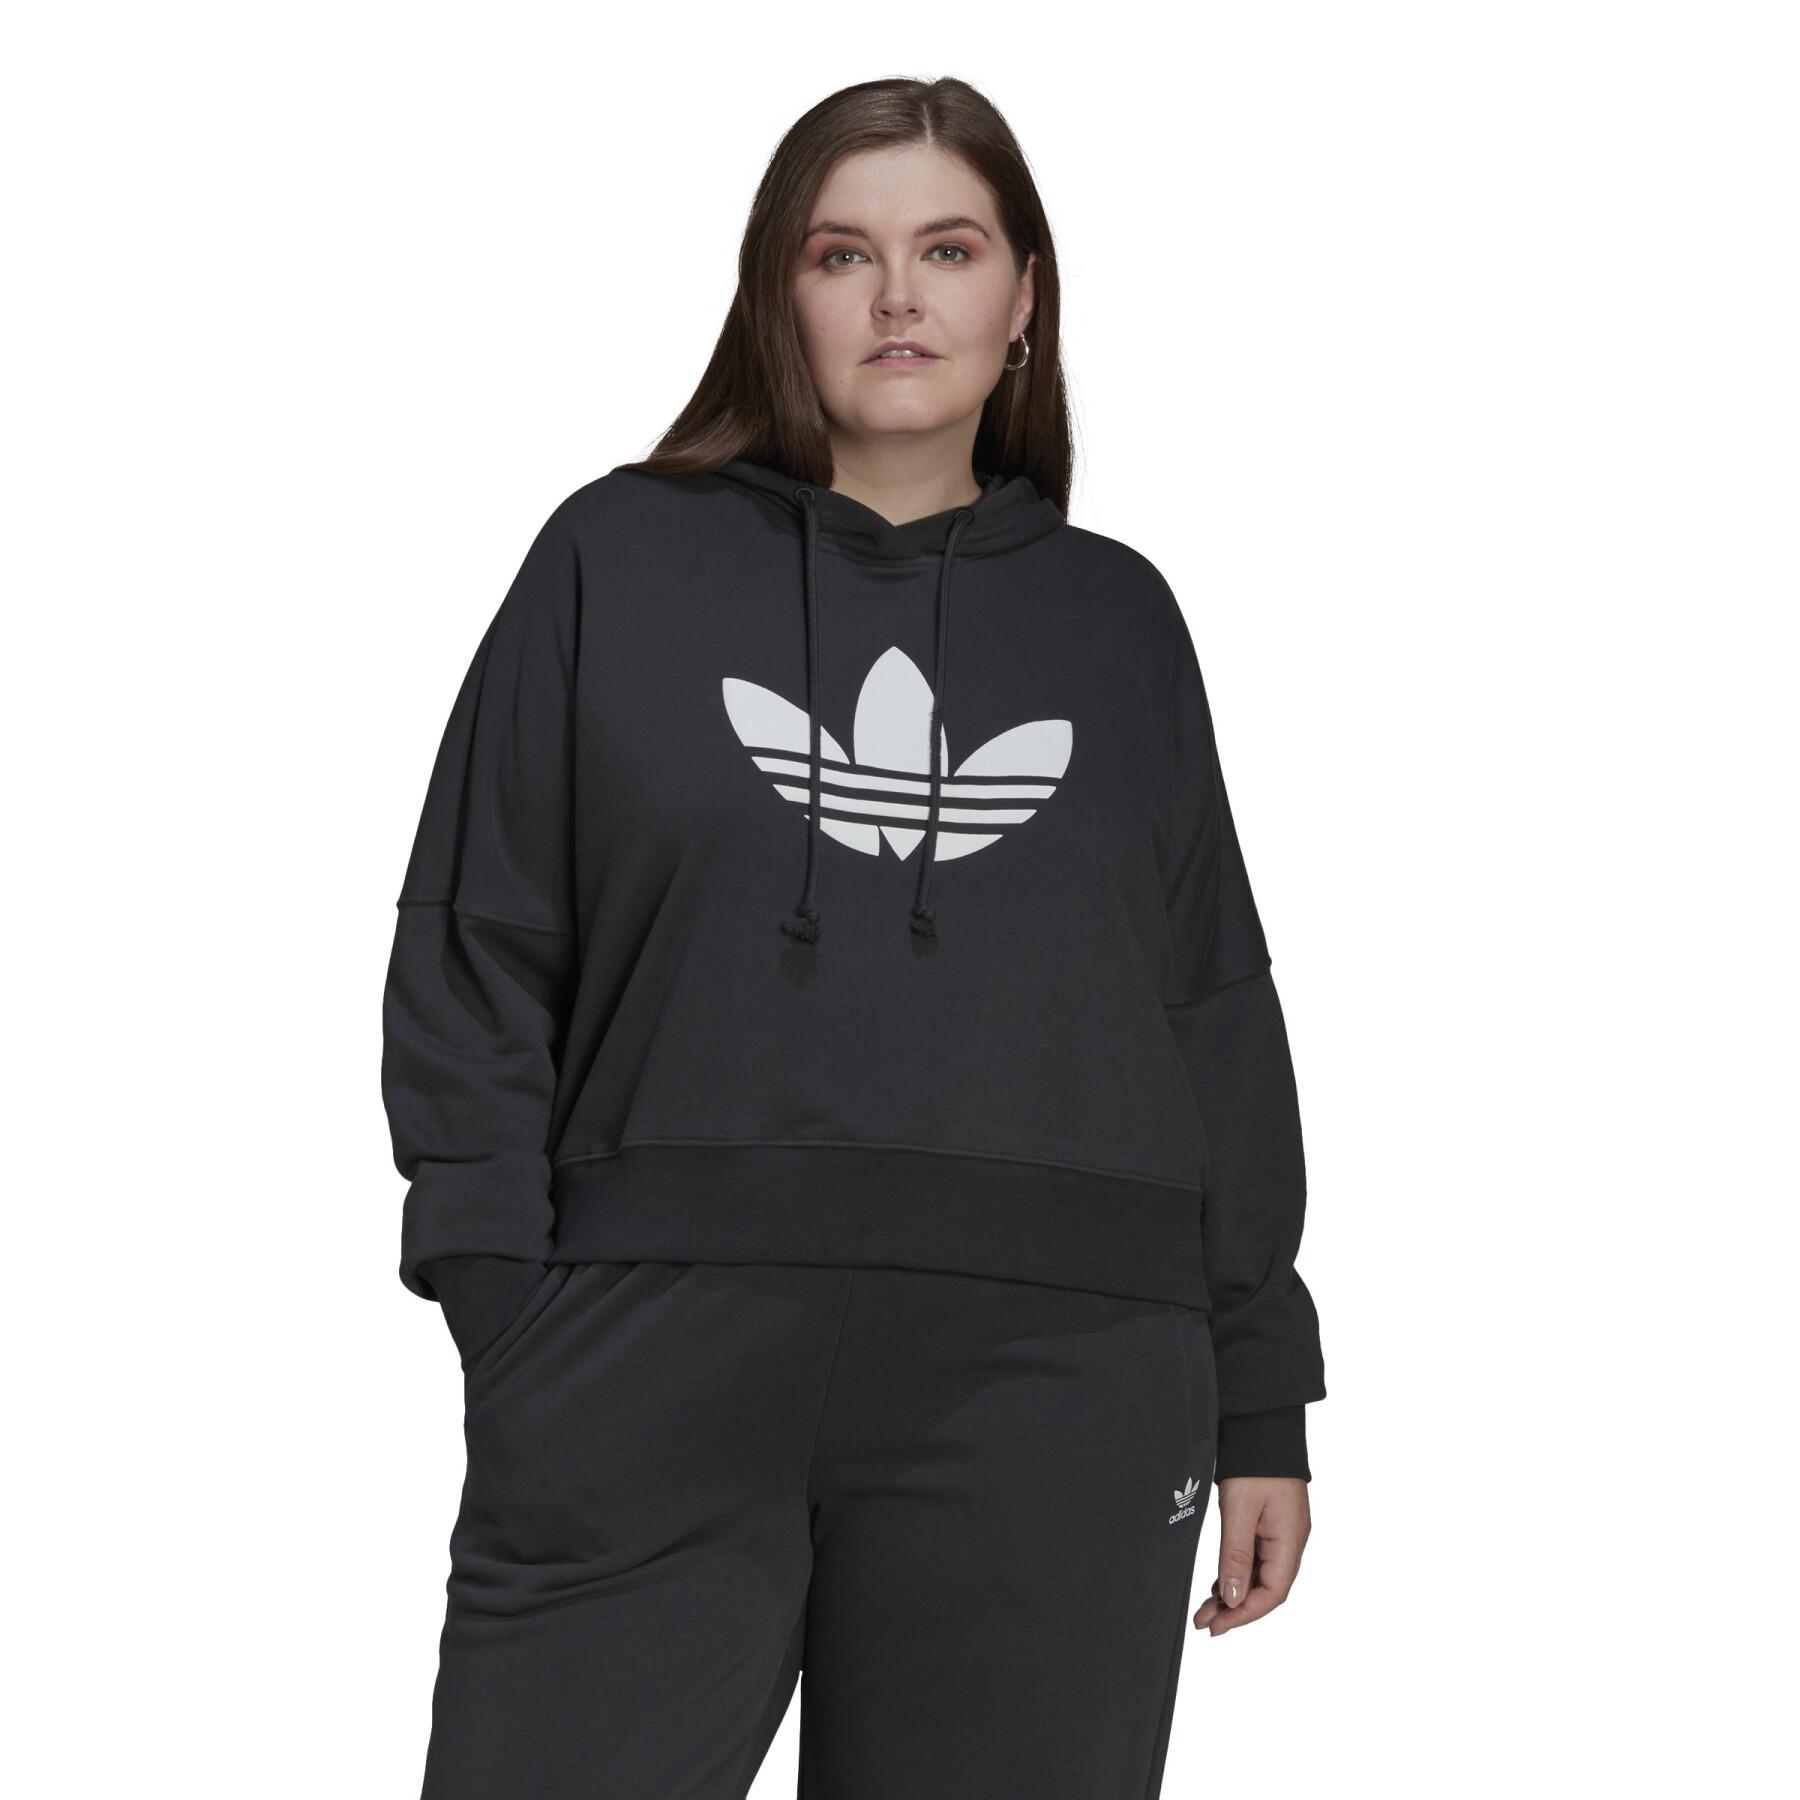 Women's oversized crop top hoodie adidas Originals